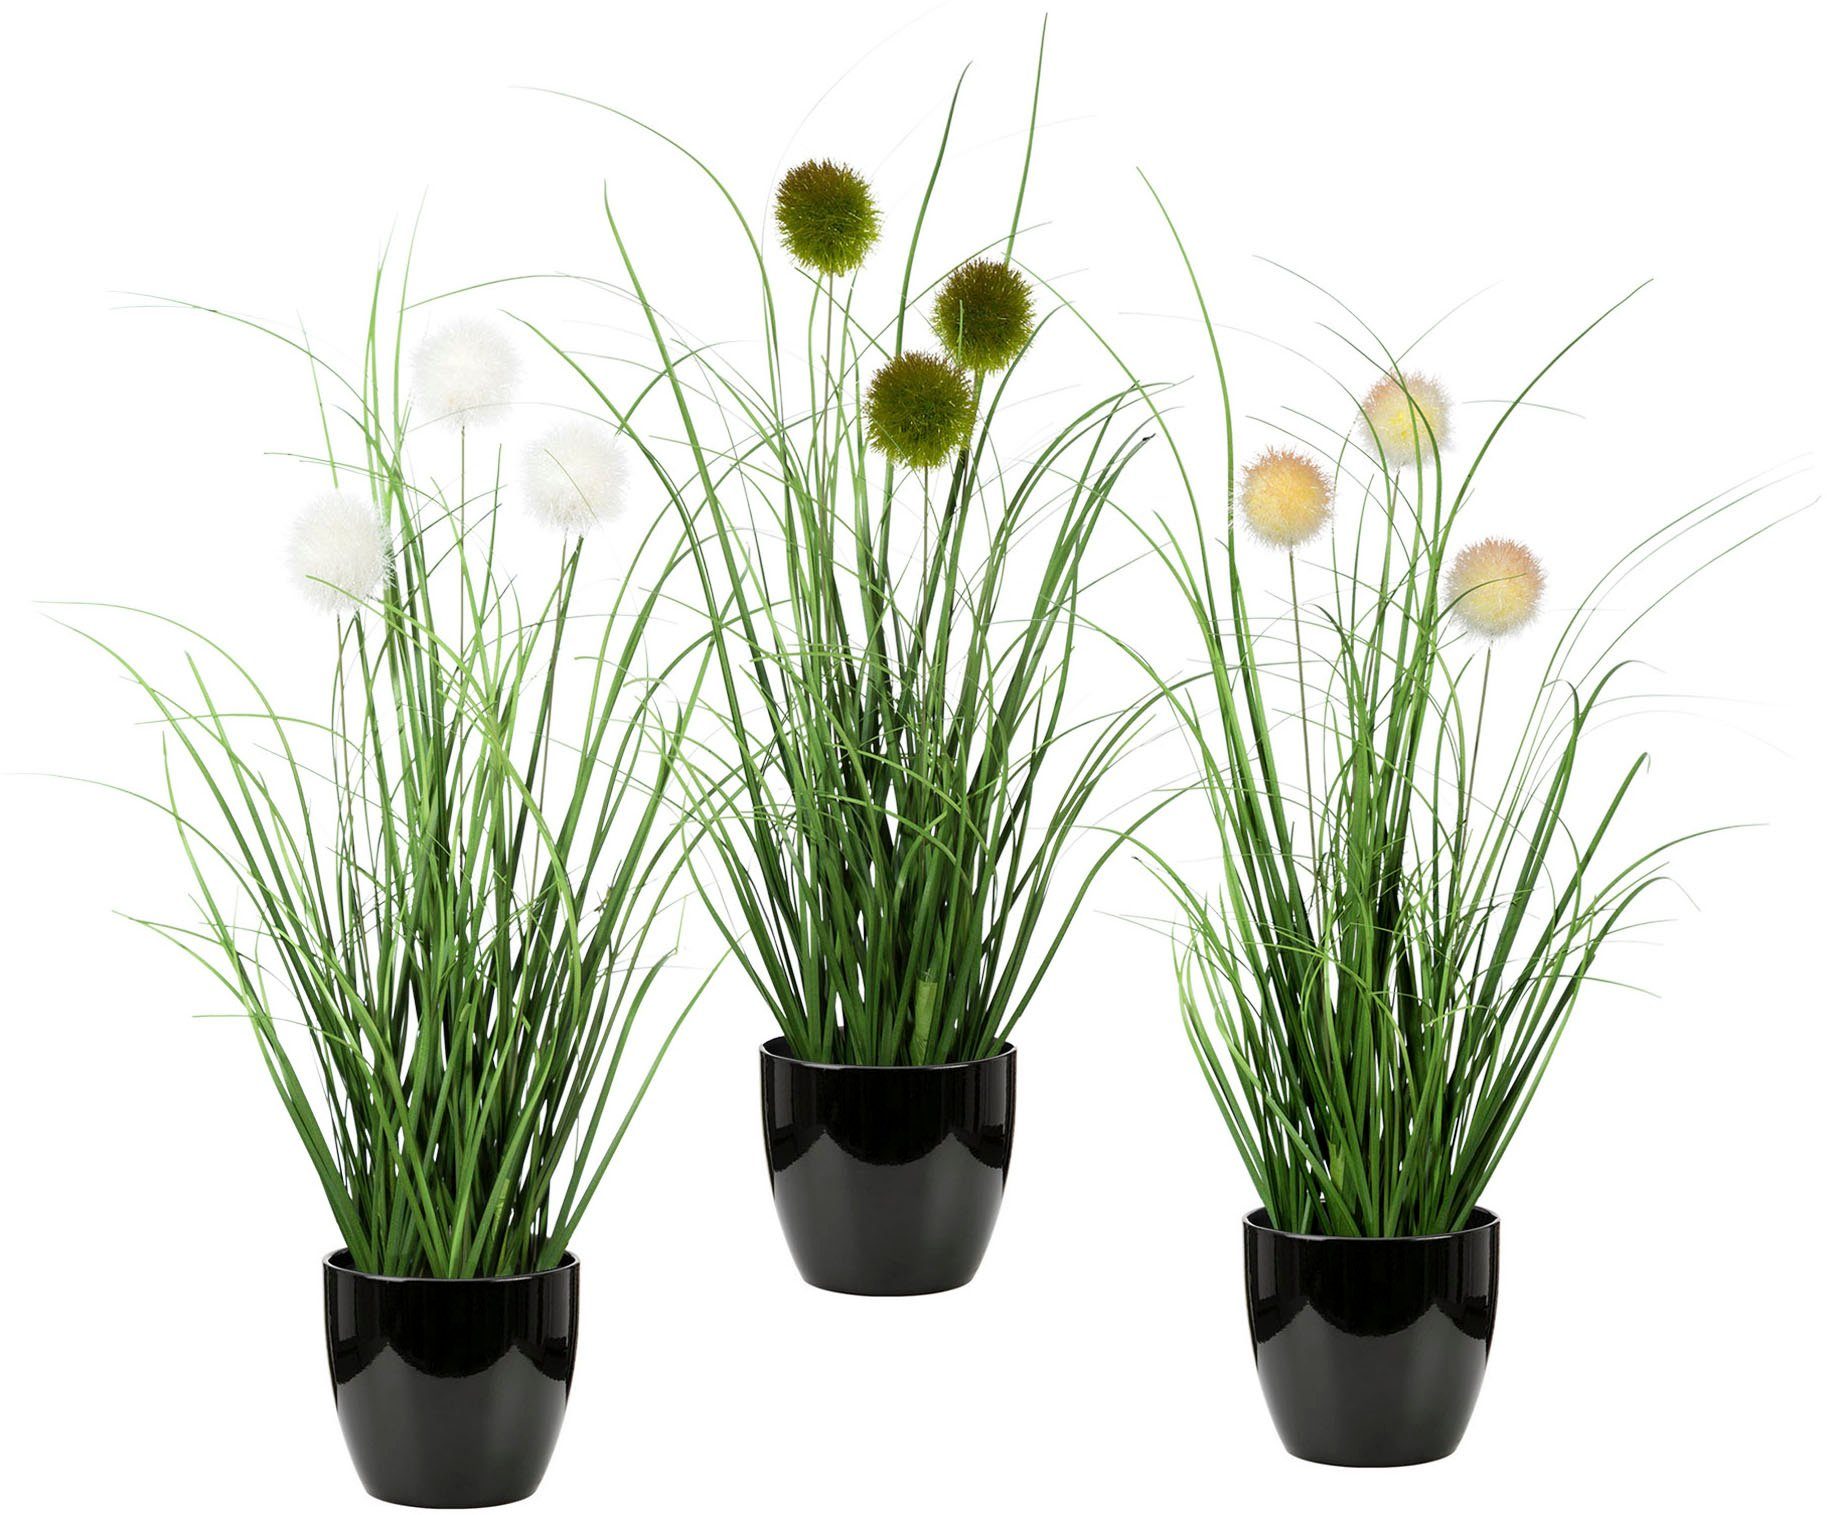 Leonique Kunstgras Grasbundel met bollen Kunstplant, gras, in een pot, set van 3 (set)